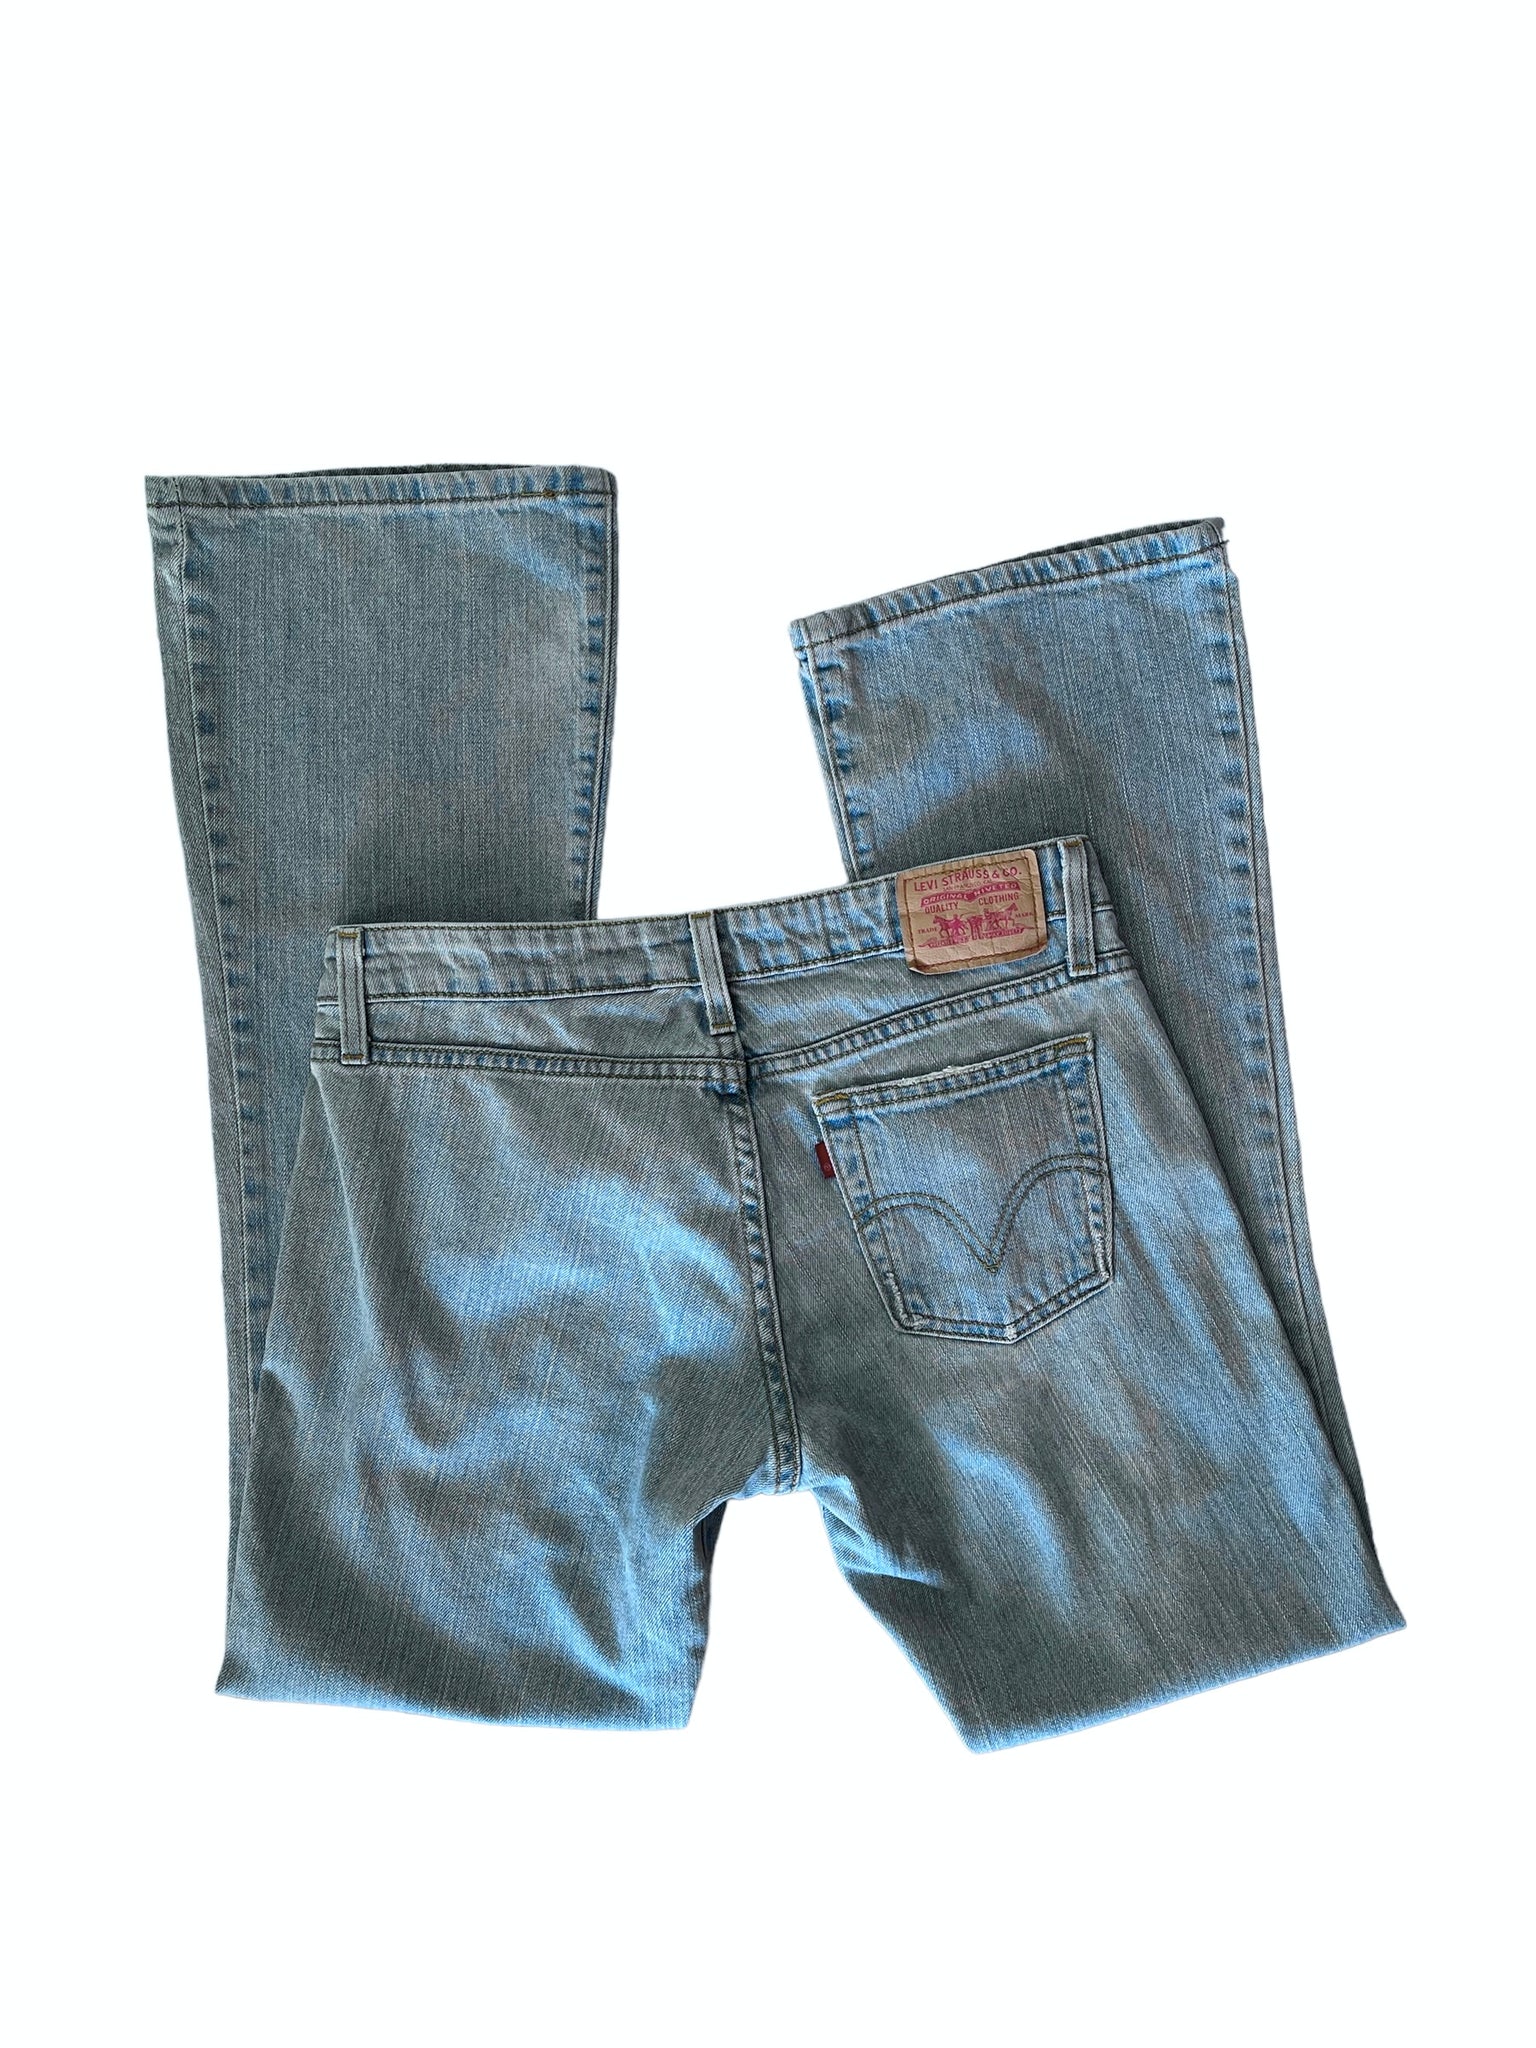 Levi's 524 low bootcut jeans – 90scloset_skg